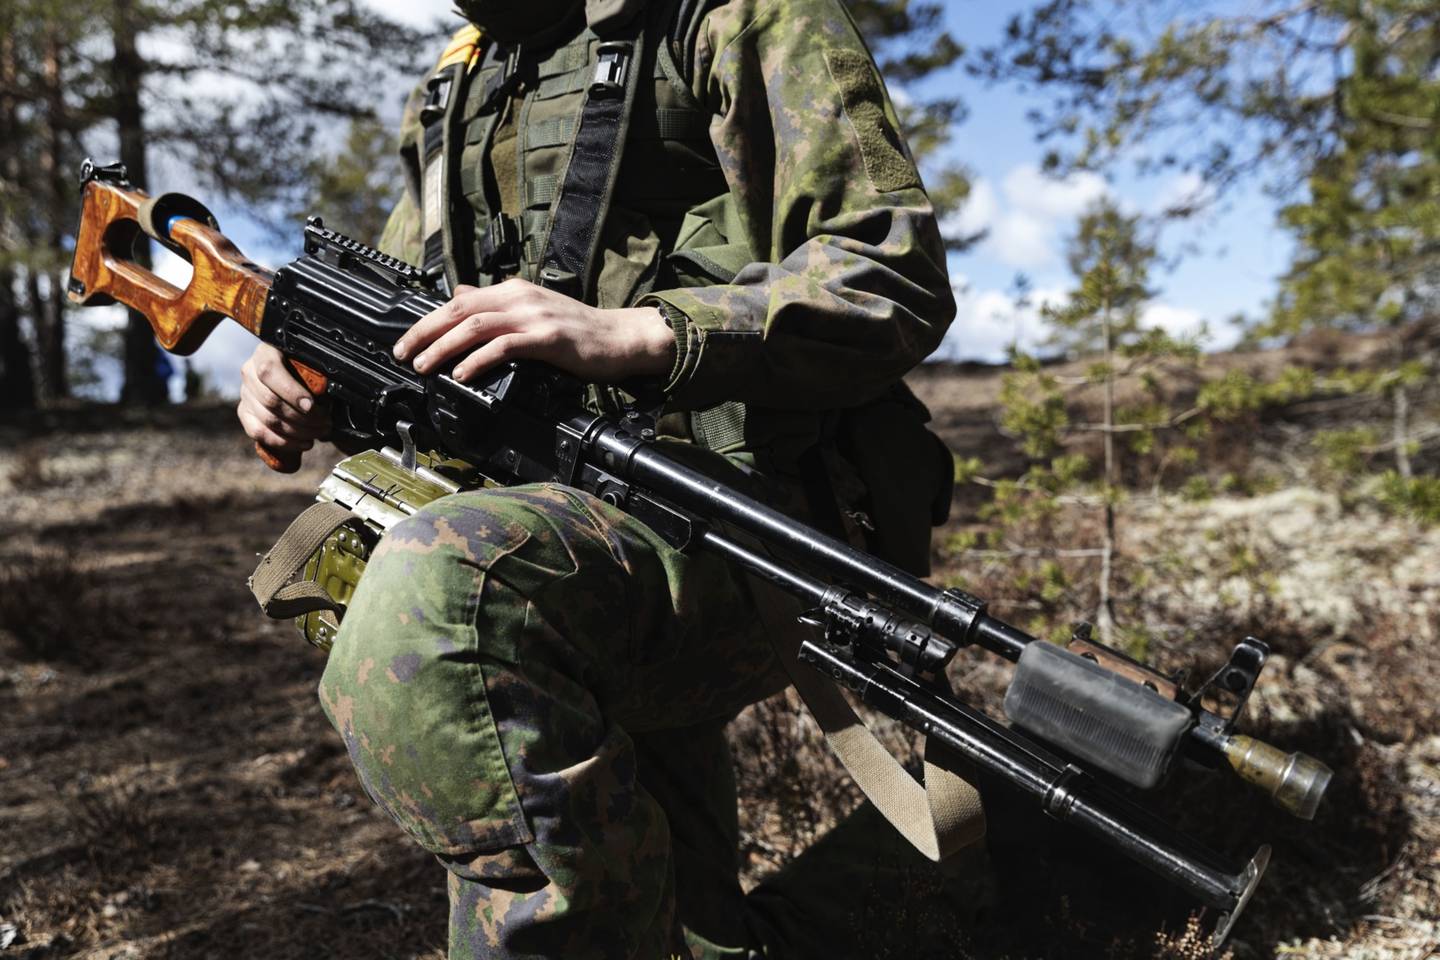 Los suecos y los finlandeses están cada vez más a favor de la adhesión a la OTAN tras la invasión rusa de Ucrania, lo que aumenta la presión sobre los dirigentes de estos países para que cambien sus políticas de no alineación militar.